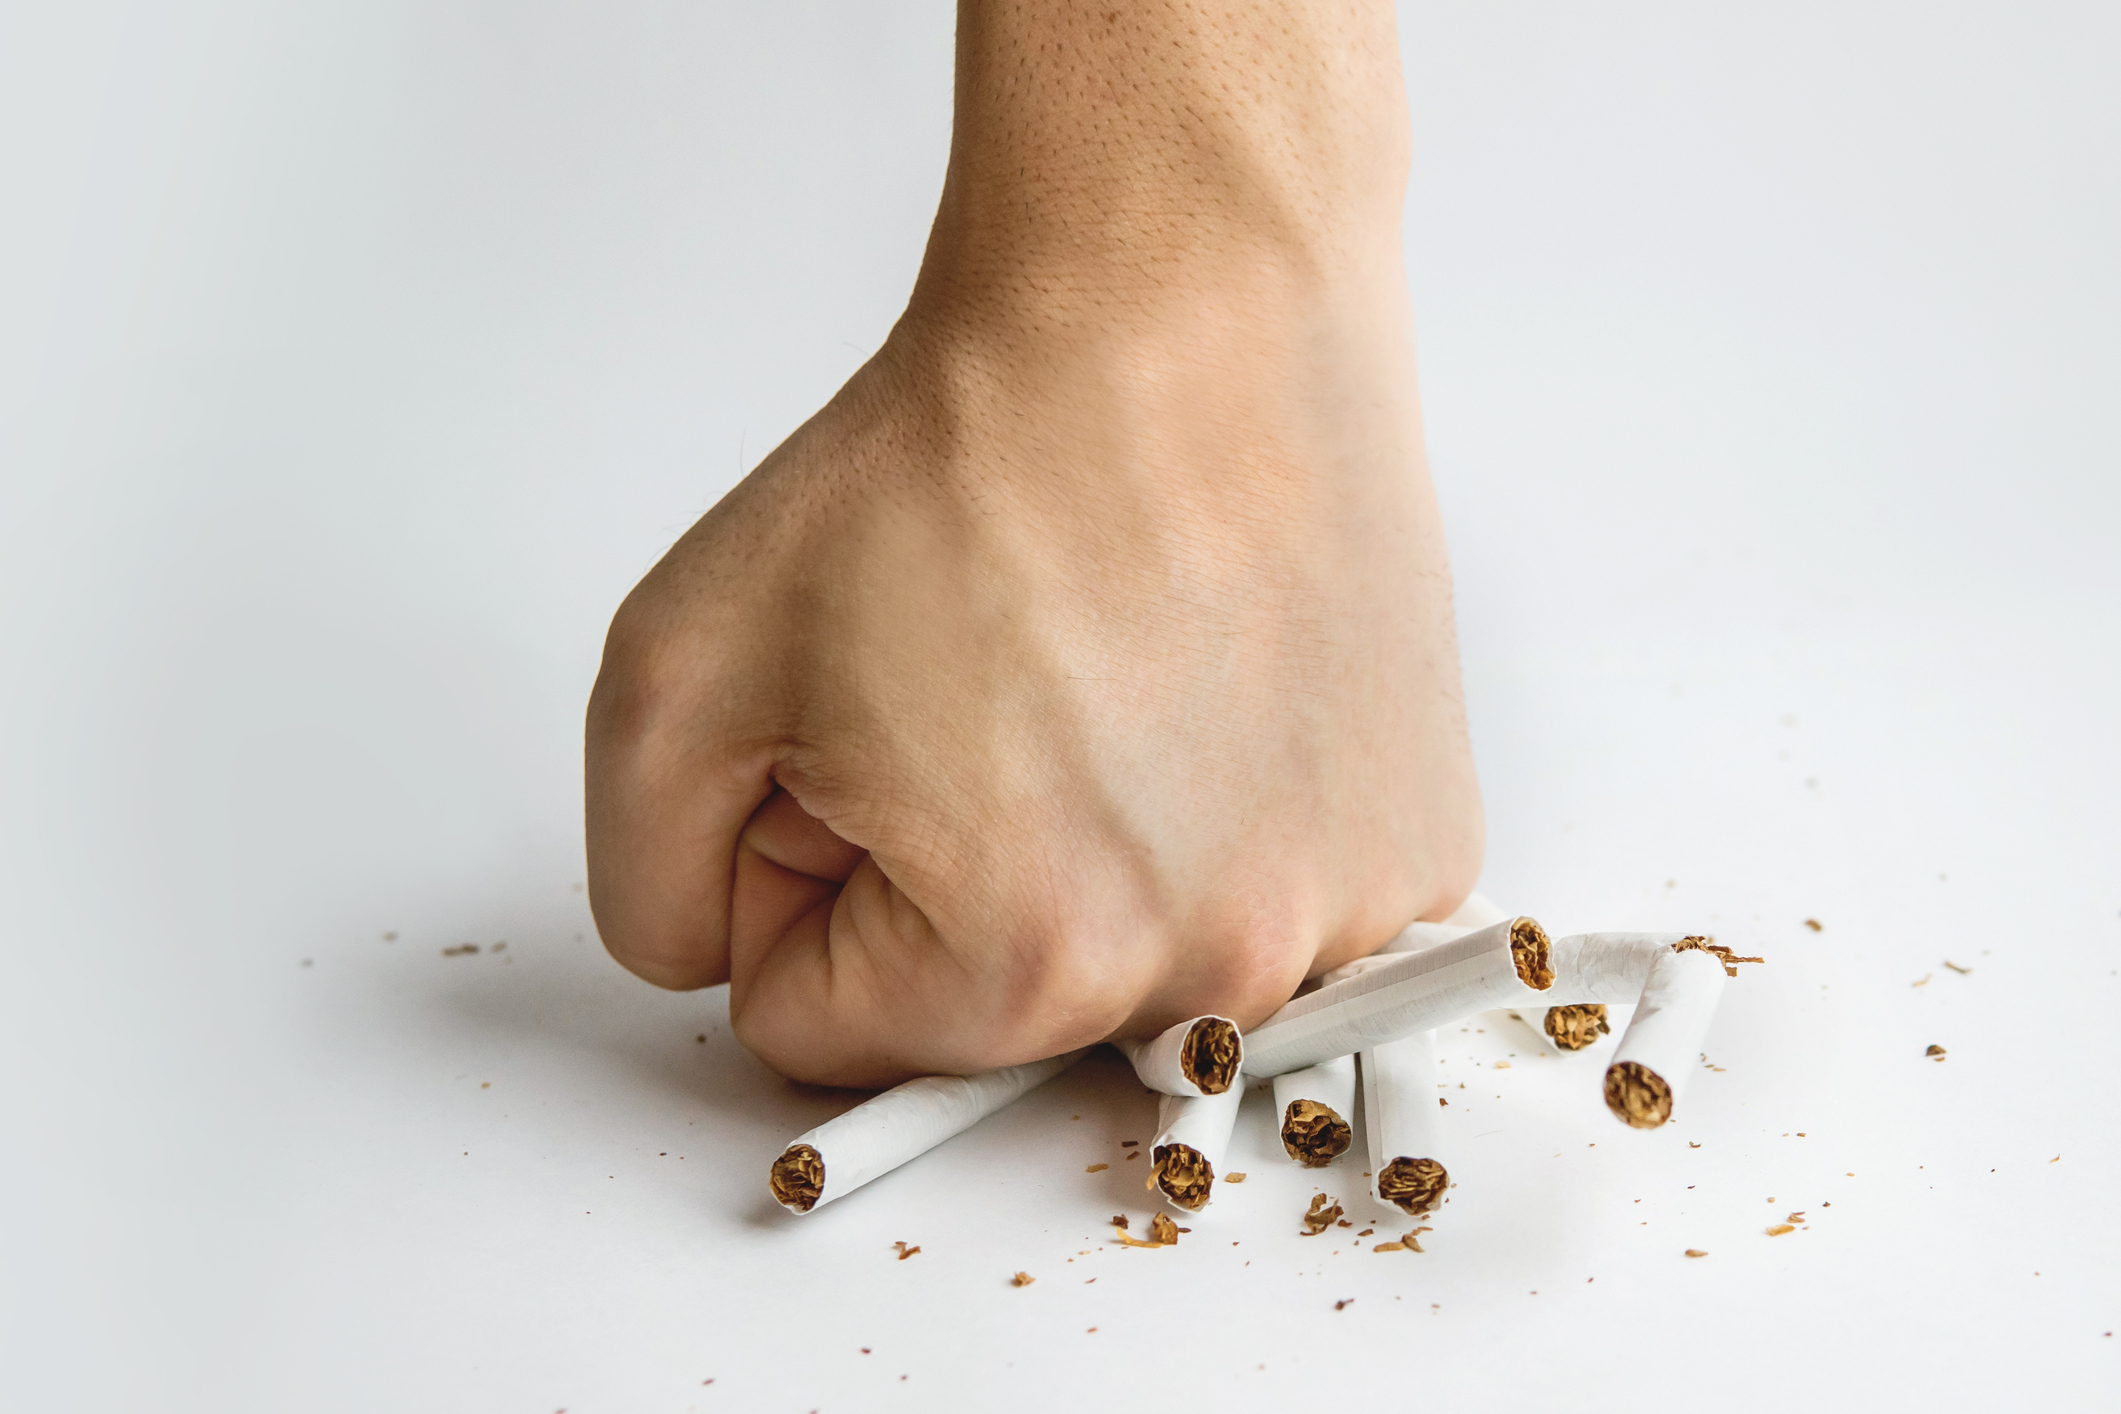 7 things that make quitting smoking easier